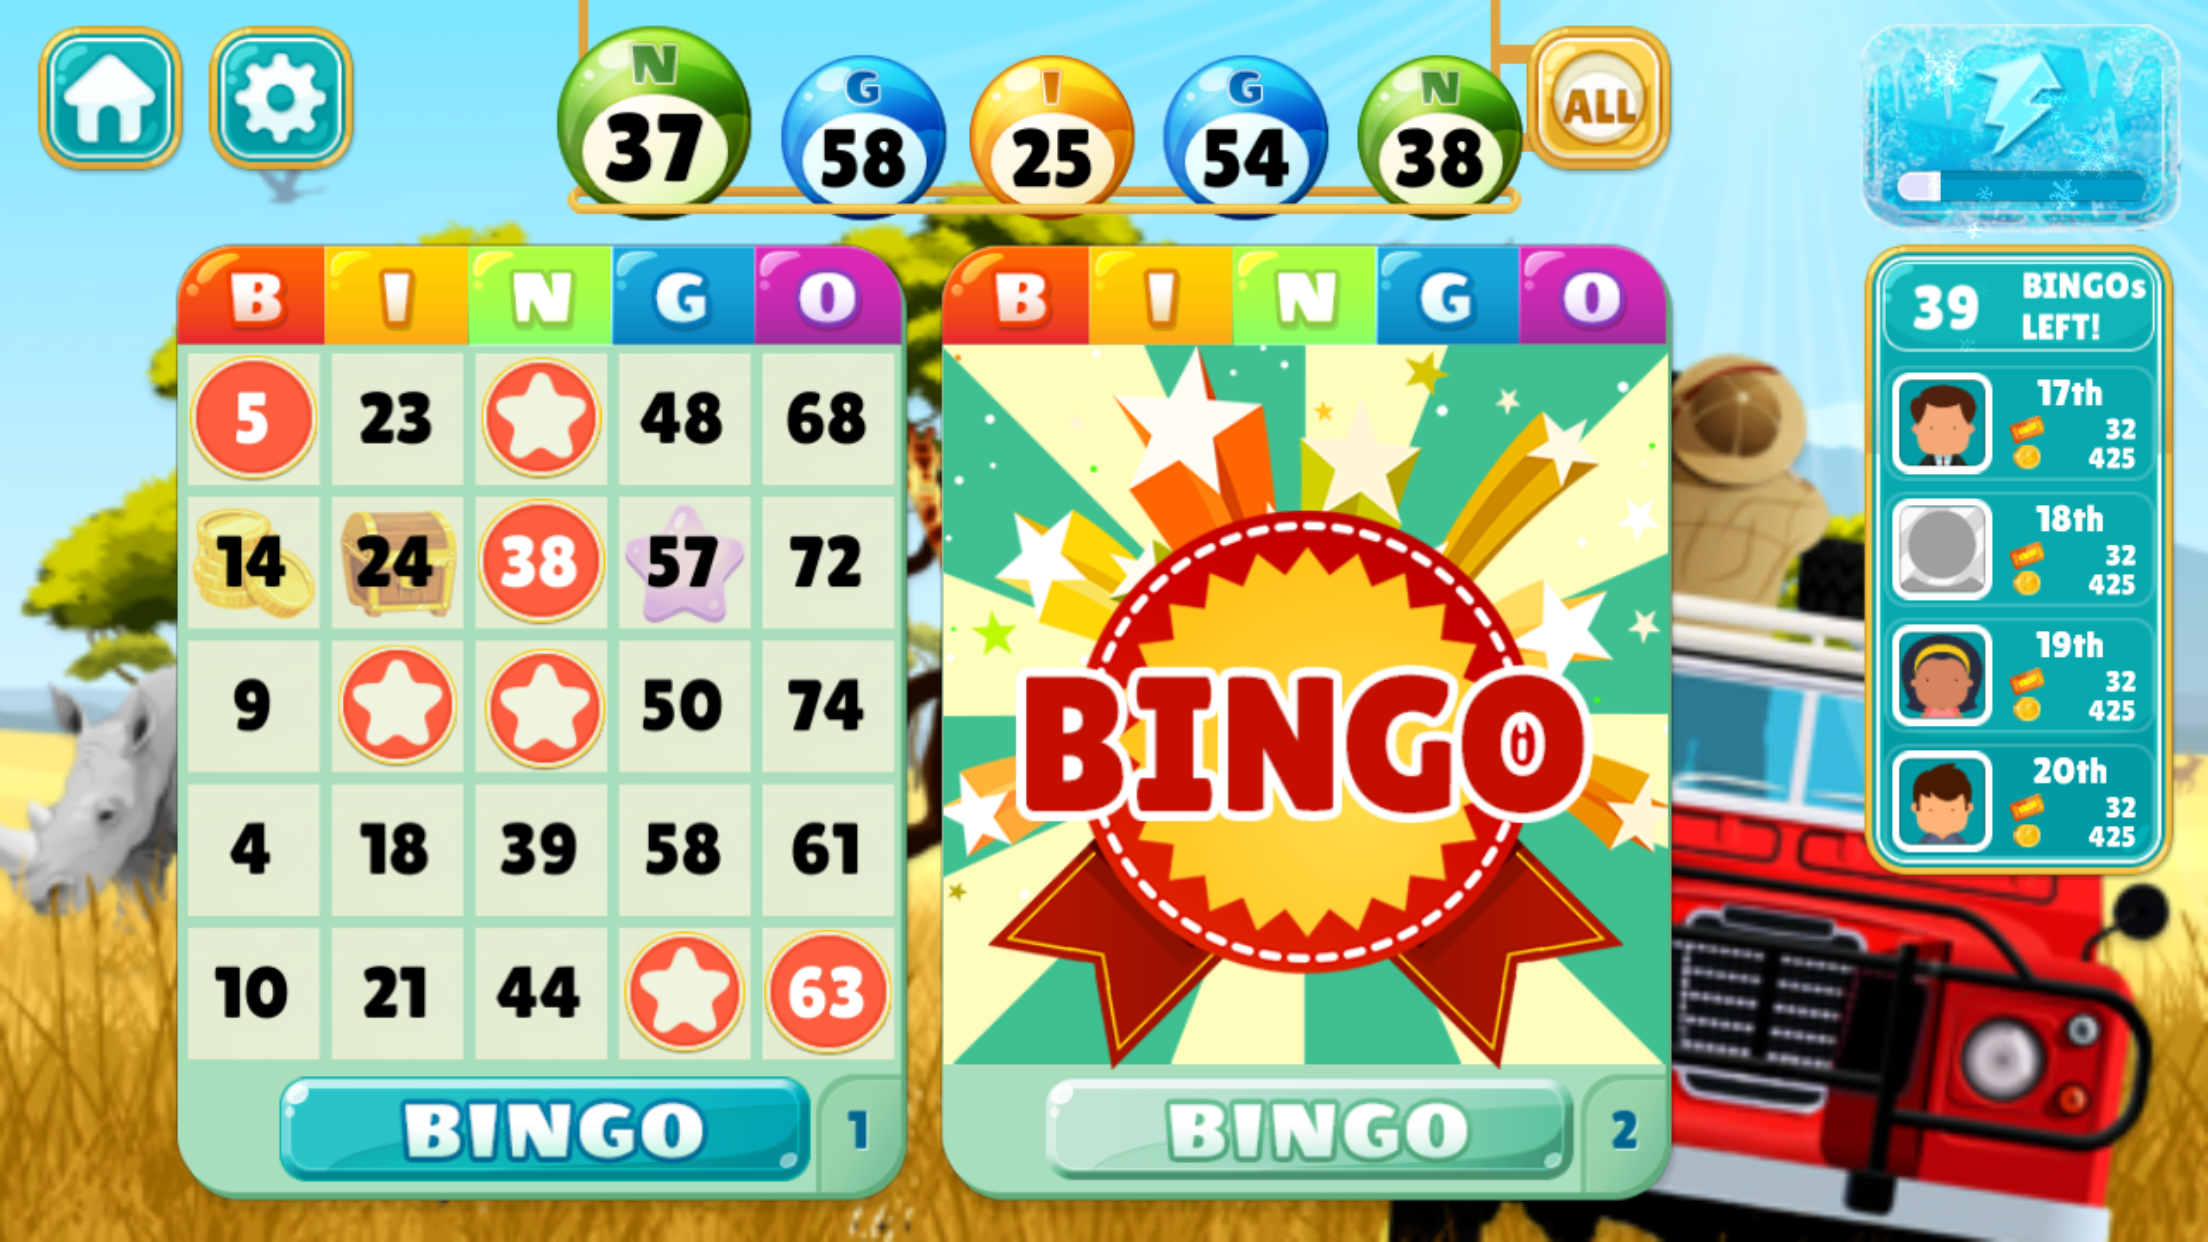 Playing Bingo